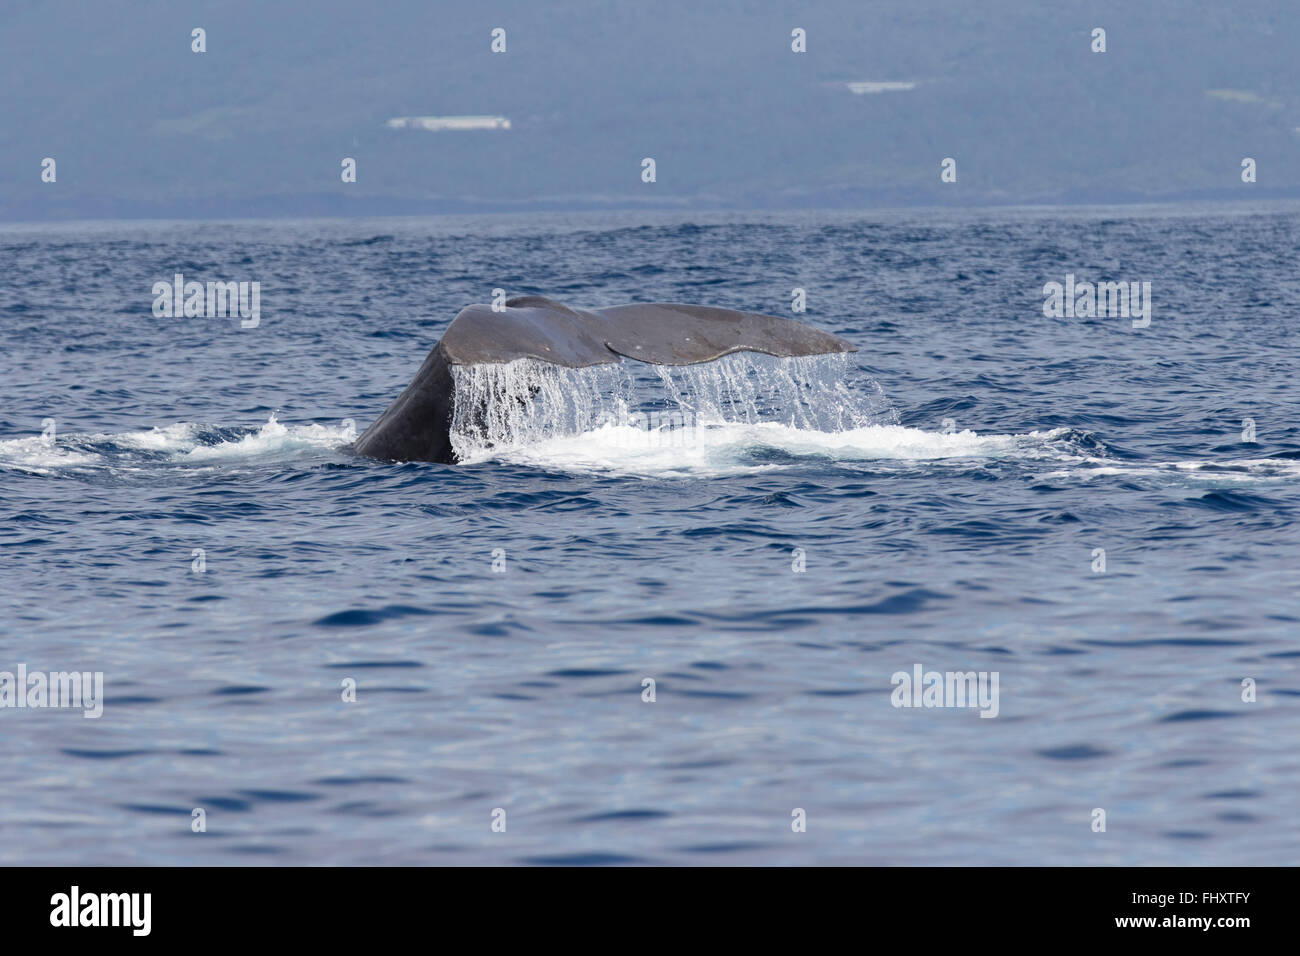 Cola de ballena esperma fluke, encima del agua, Physeter macrocephalus, buceo, la isla de Pico, Azores, Foto de stock